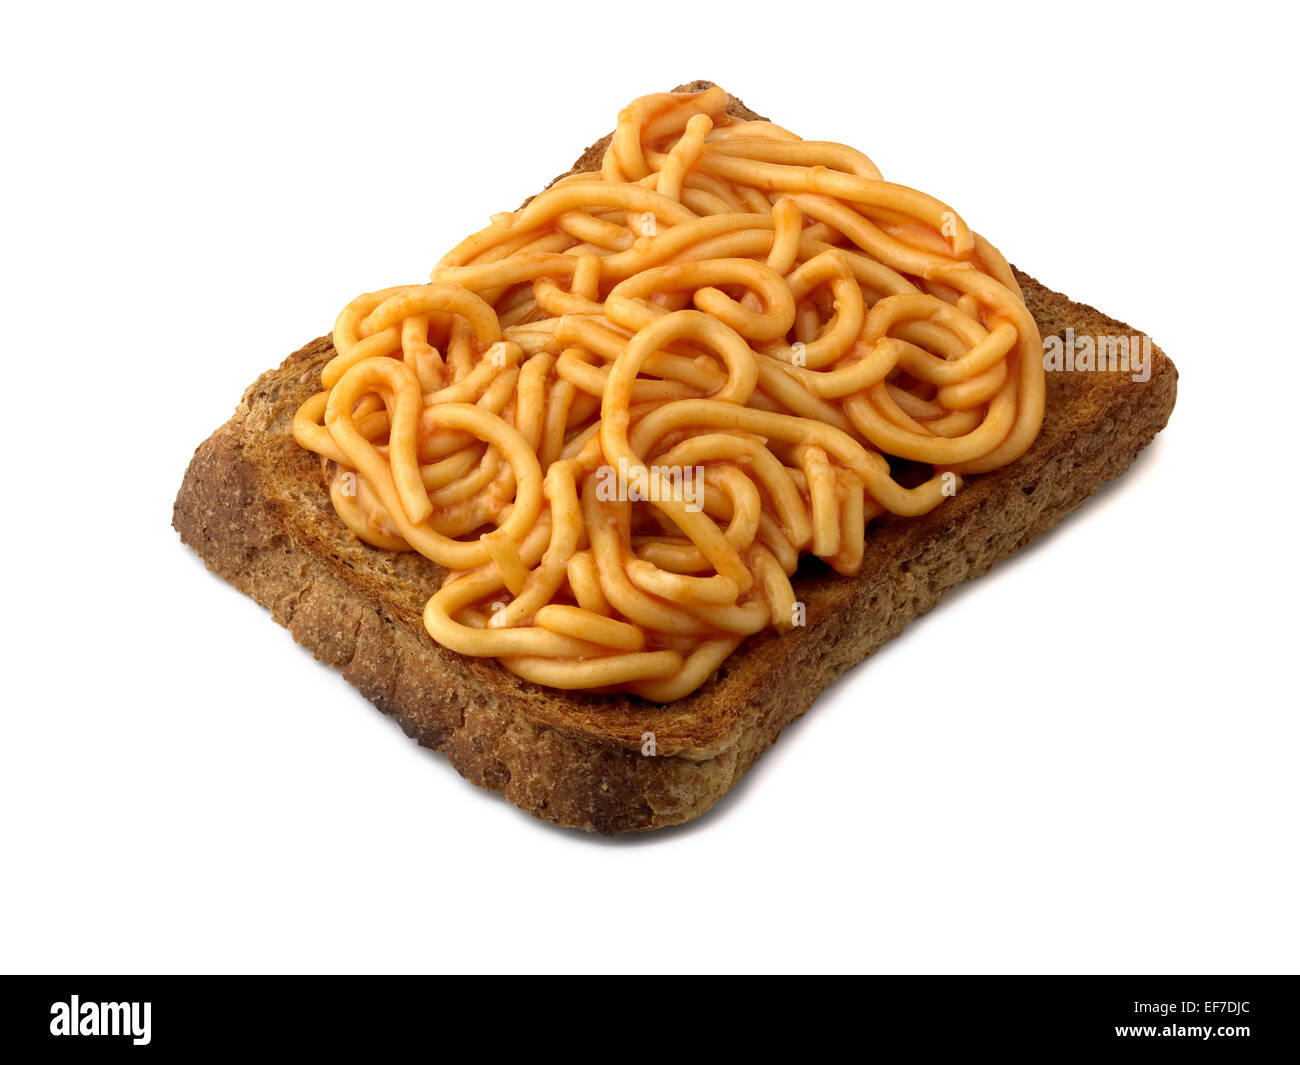 tinned spaghetti on toast Stock Photo